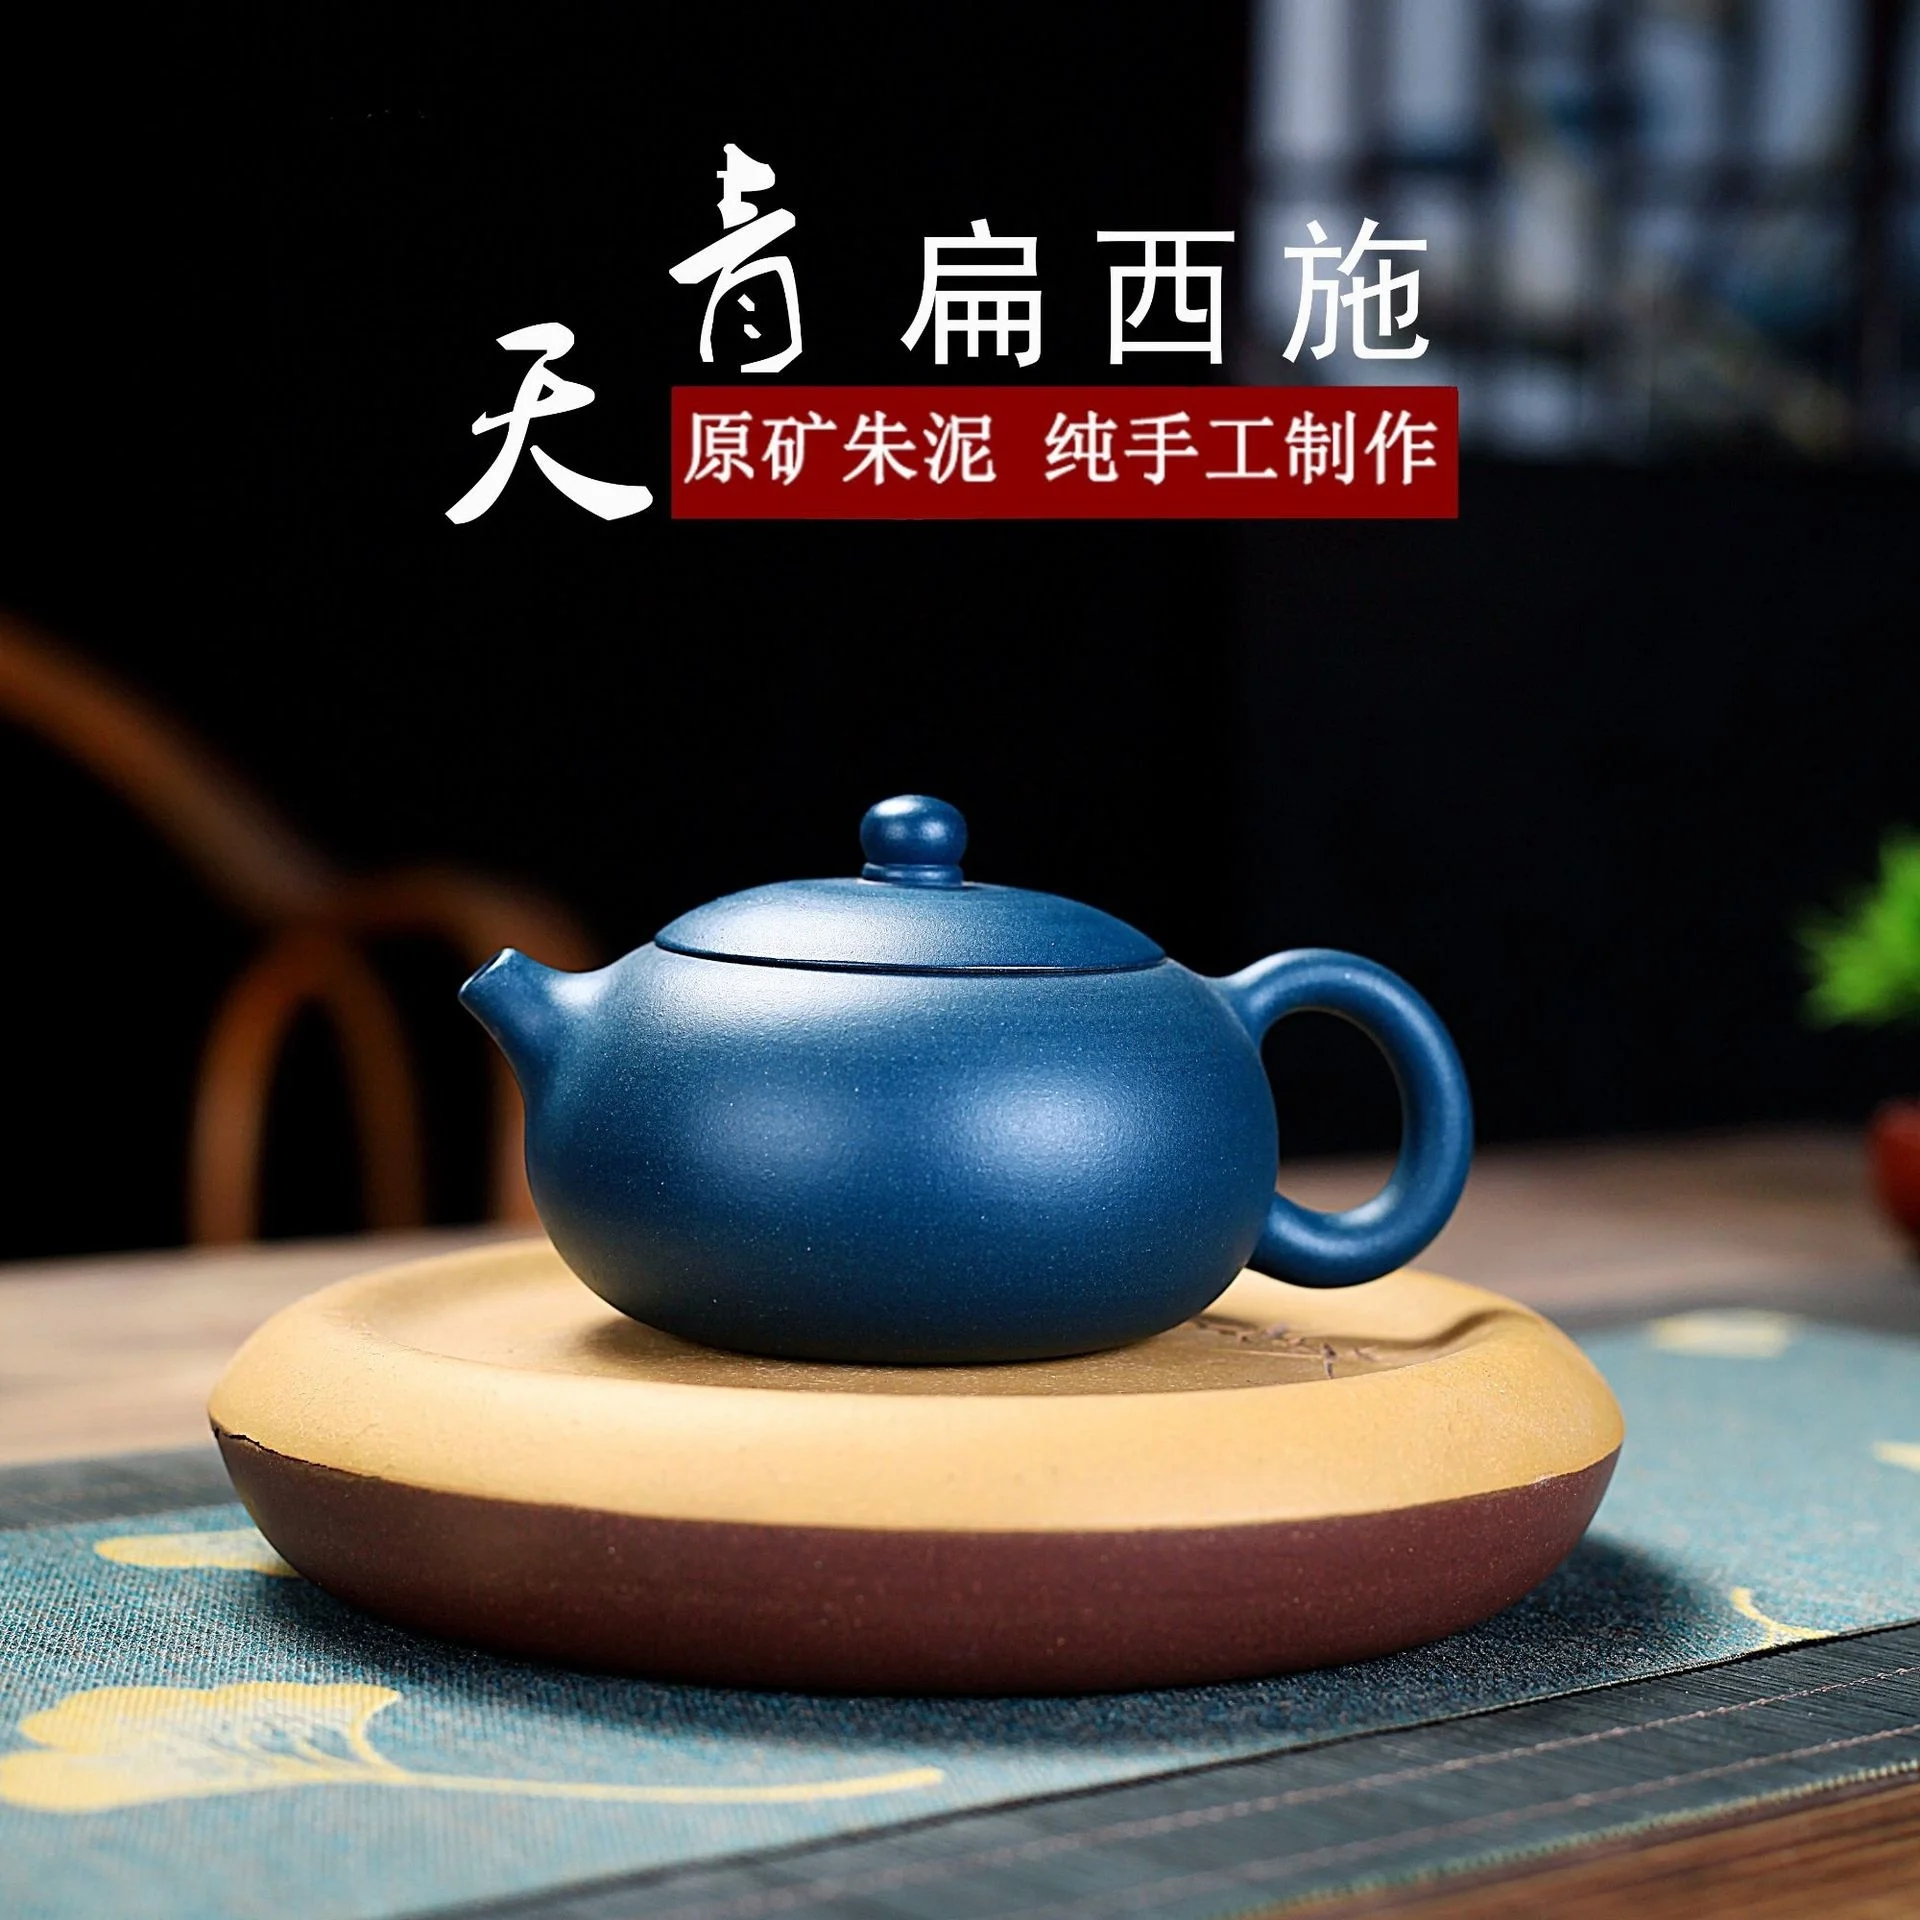 

Yixing знаменитый чайник из фиолетовой глины ручной работы Tianqing плоский чайник Xishi бытовой чайный набор кунг-фу Специальная цена